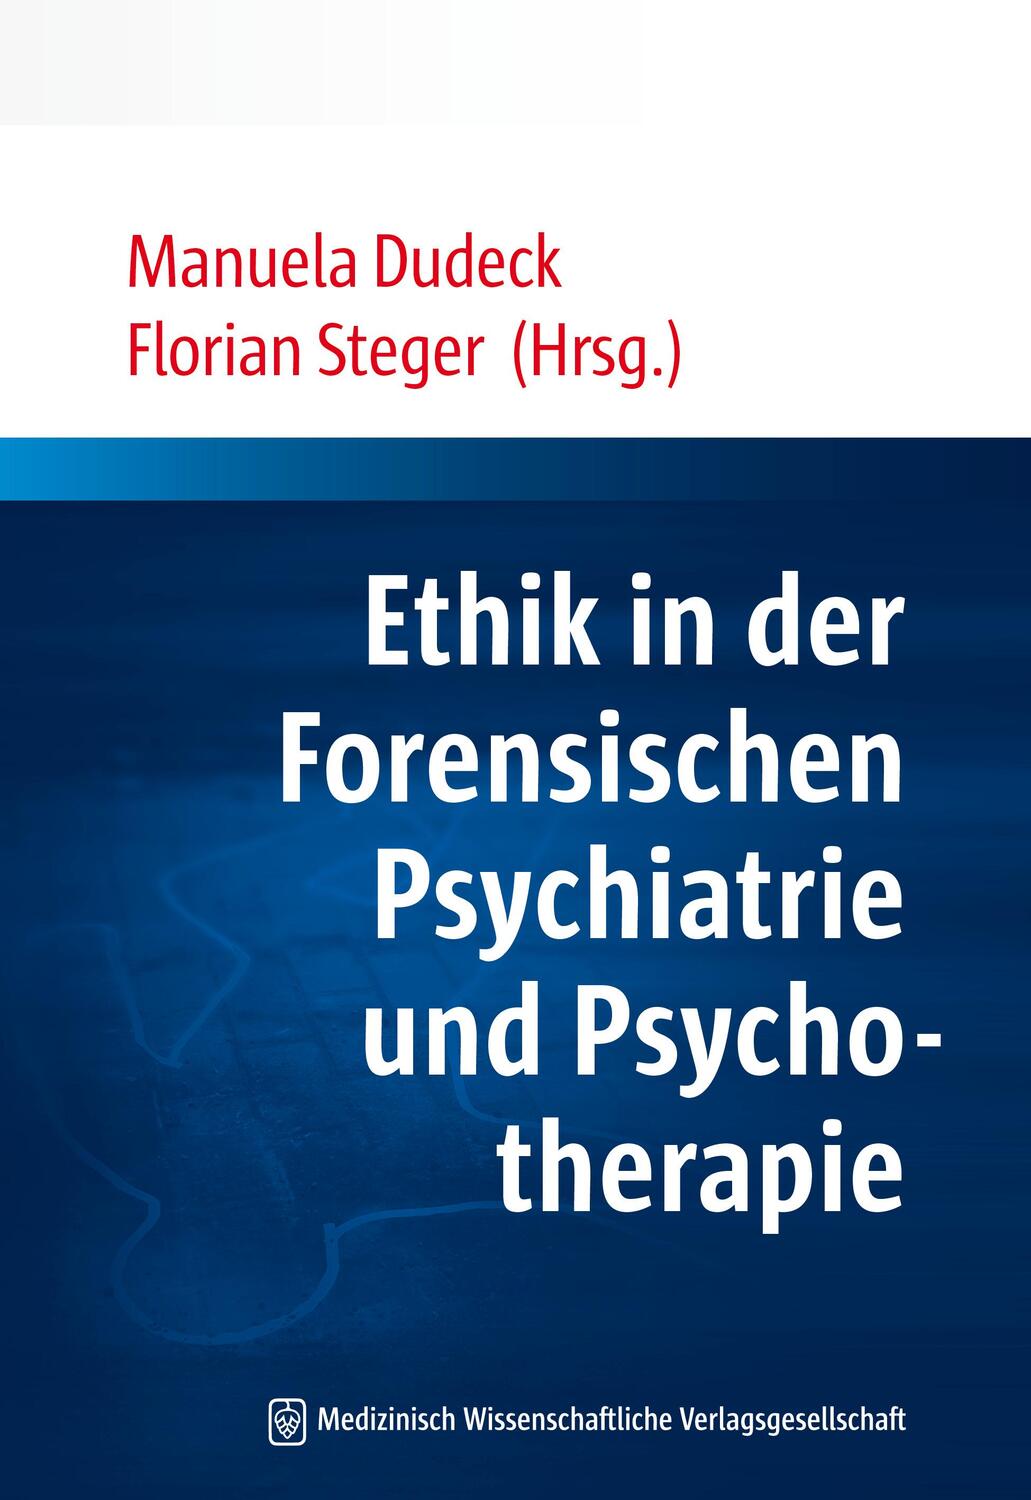 Ethik in der Forensischen Psychiatrie und Psychotherapie - Dudeck, Manuela